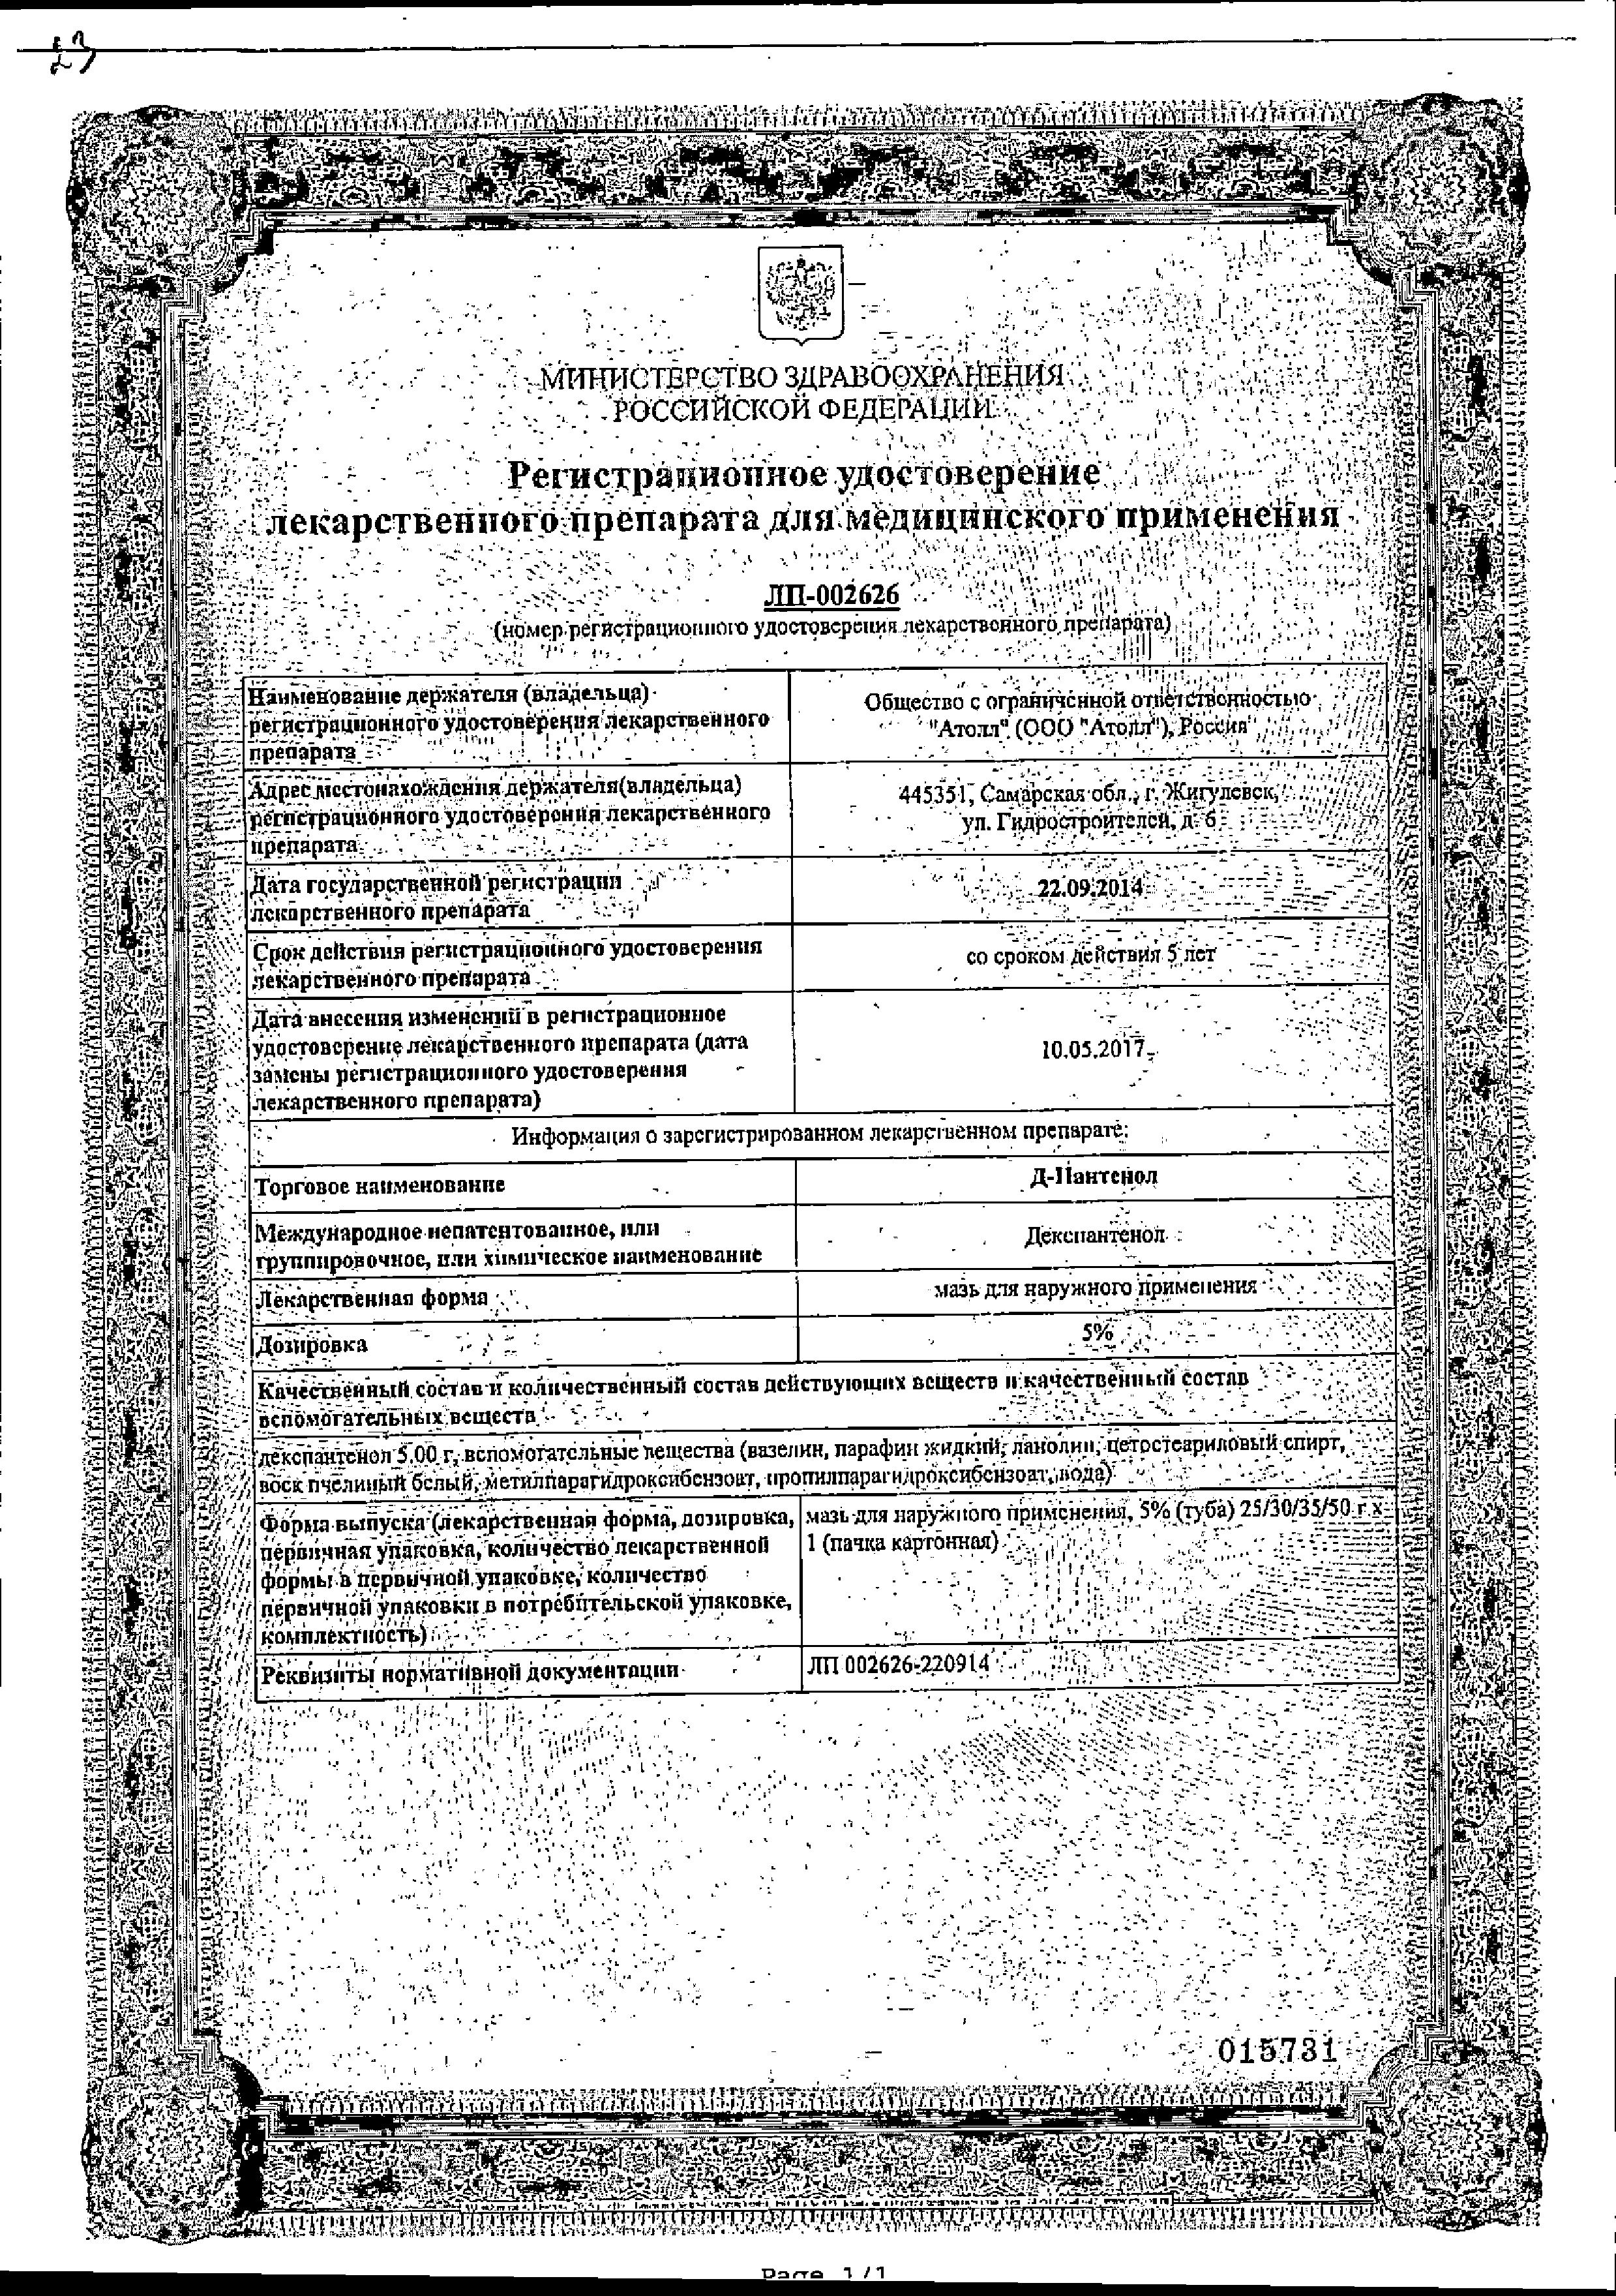 Д-Пантенол сертификат